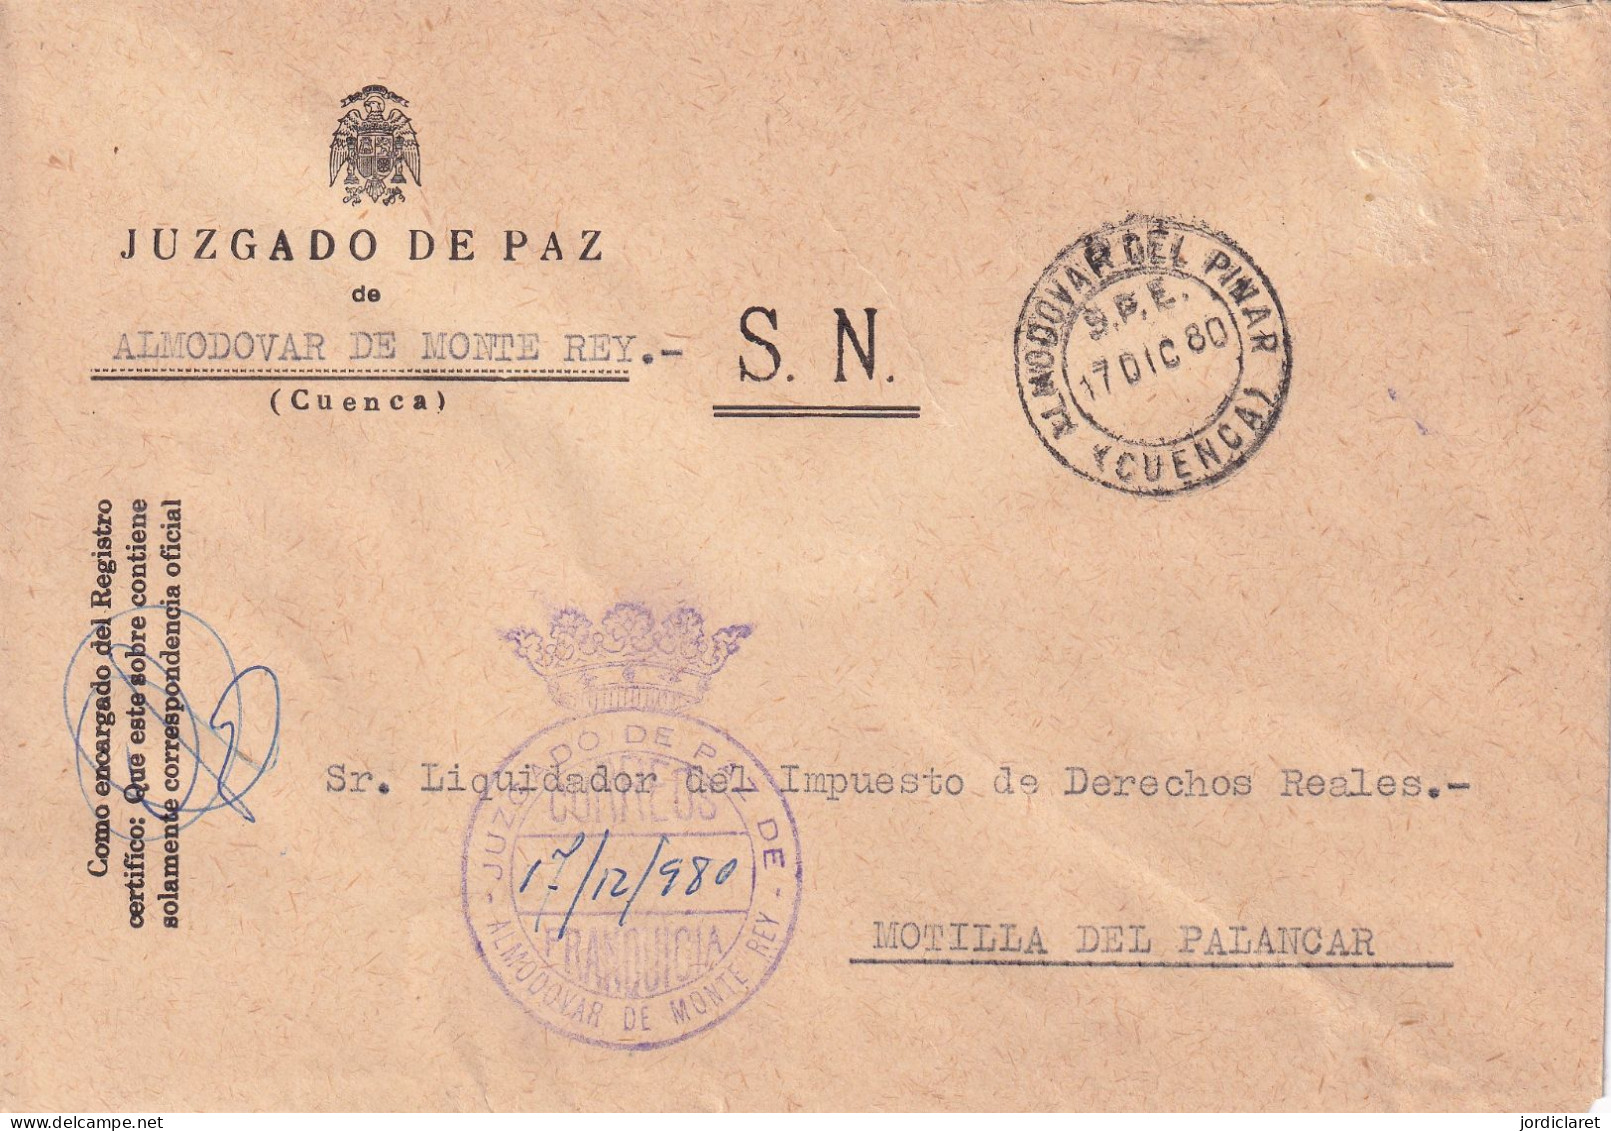 JUZGADO DE PAZ ALMODOVAR DE MONTE REY CUENCA 1980 - Franchigia Postale